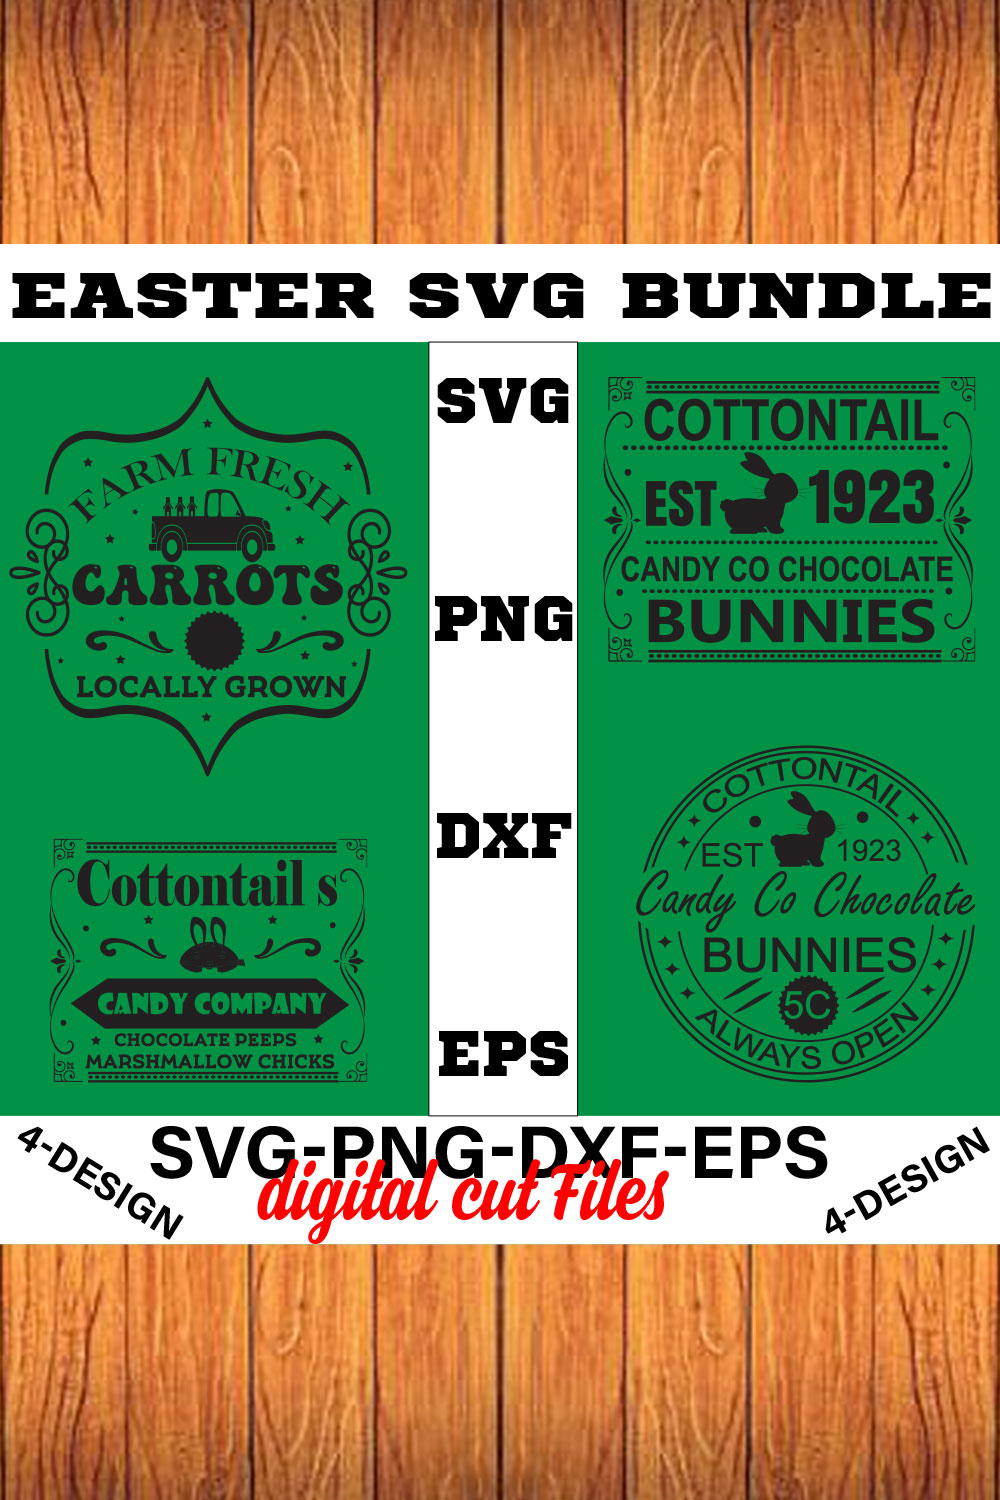 Happy Easter SVG Bundle, Easter SVG, Easter quotes, Easter Bunny svg, Easter Egg svg, Volume-09 pinterest preview image.